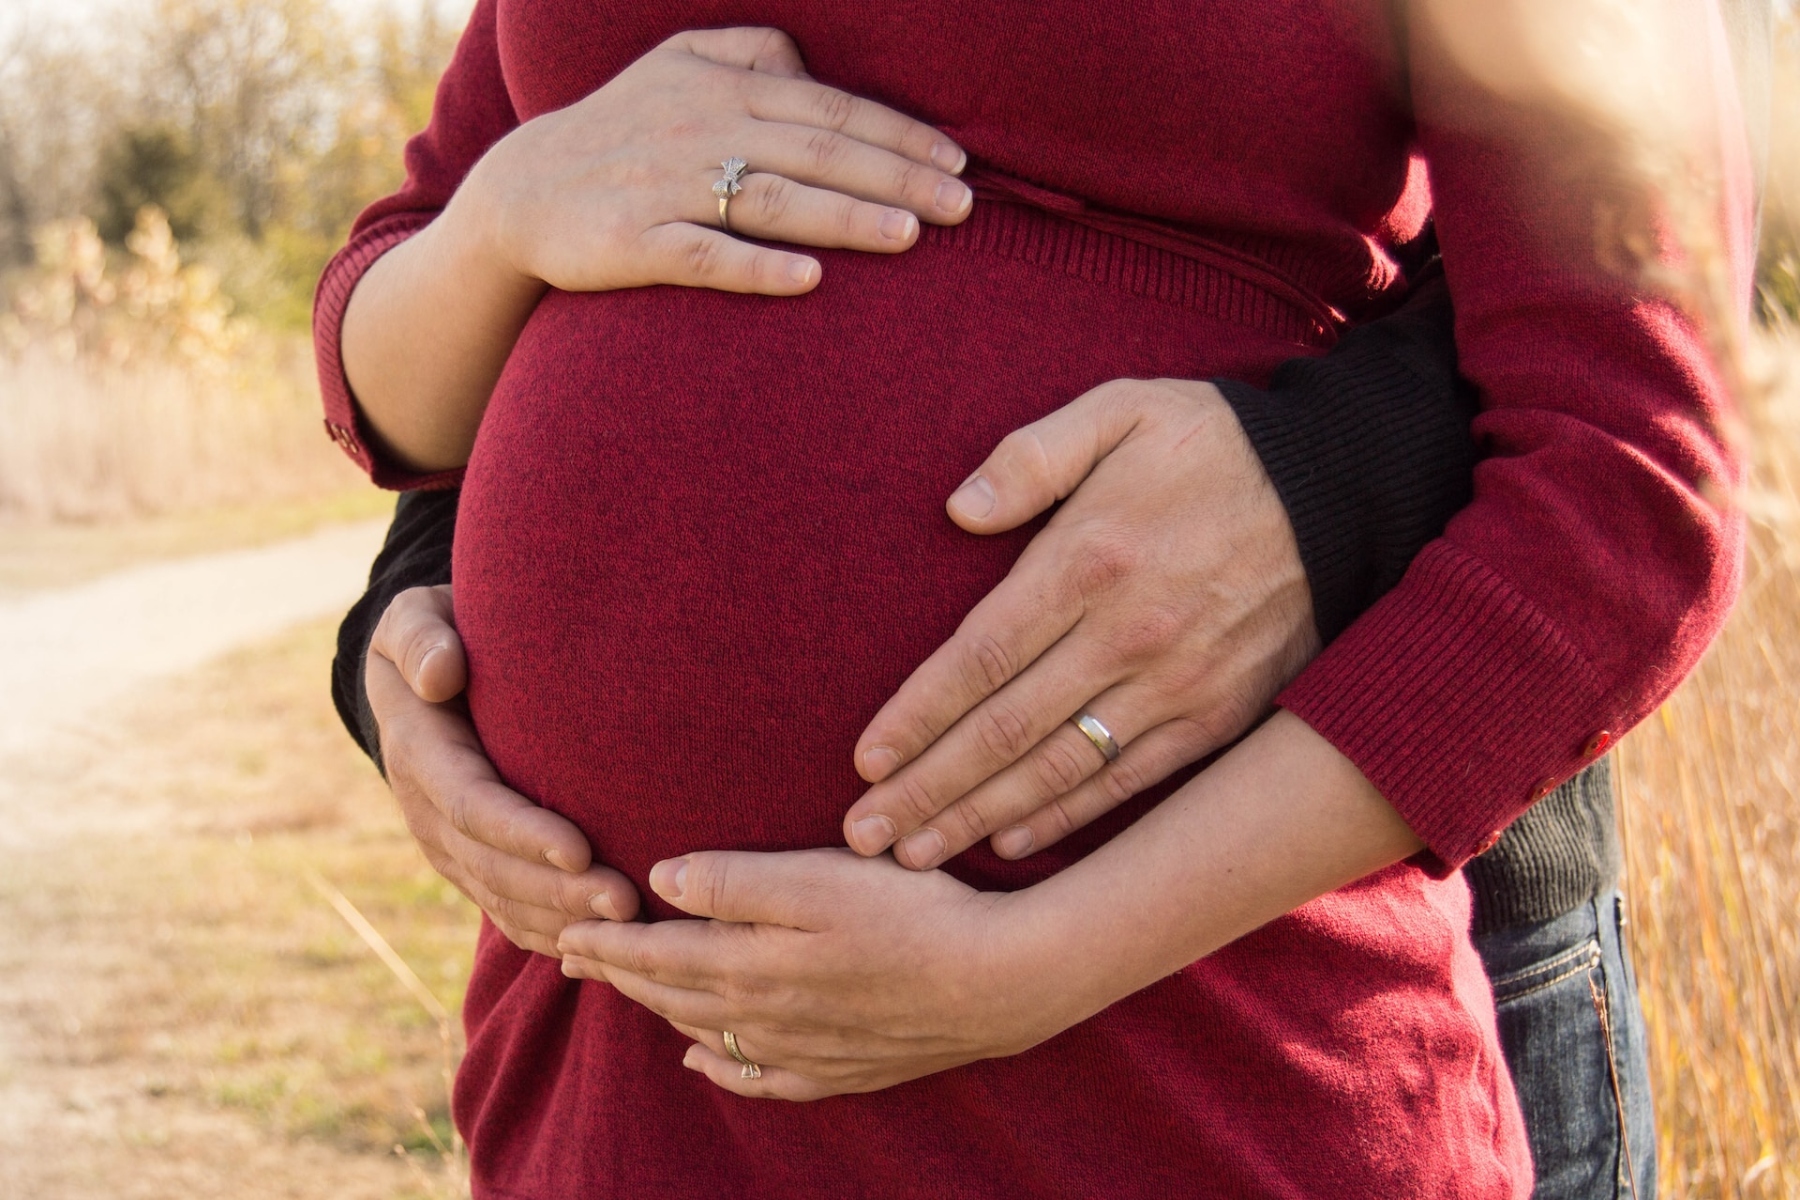 Εγκυμοσύνη: Πώς να στηρίξετε την σύντροφό σας σε αυτό το όμορφο ταξίδι;